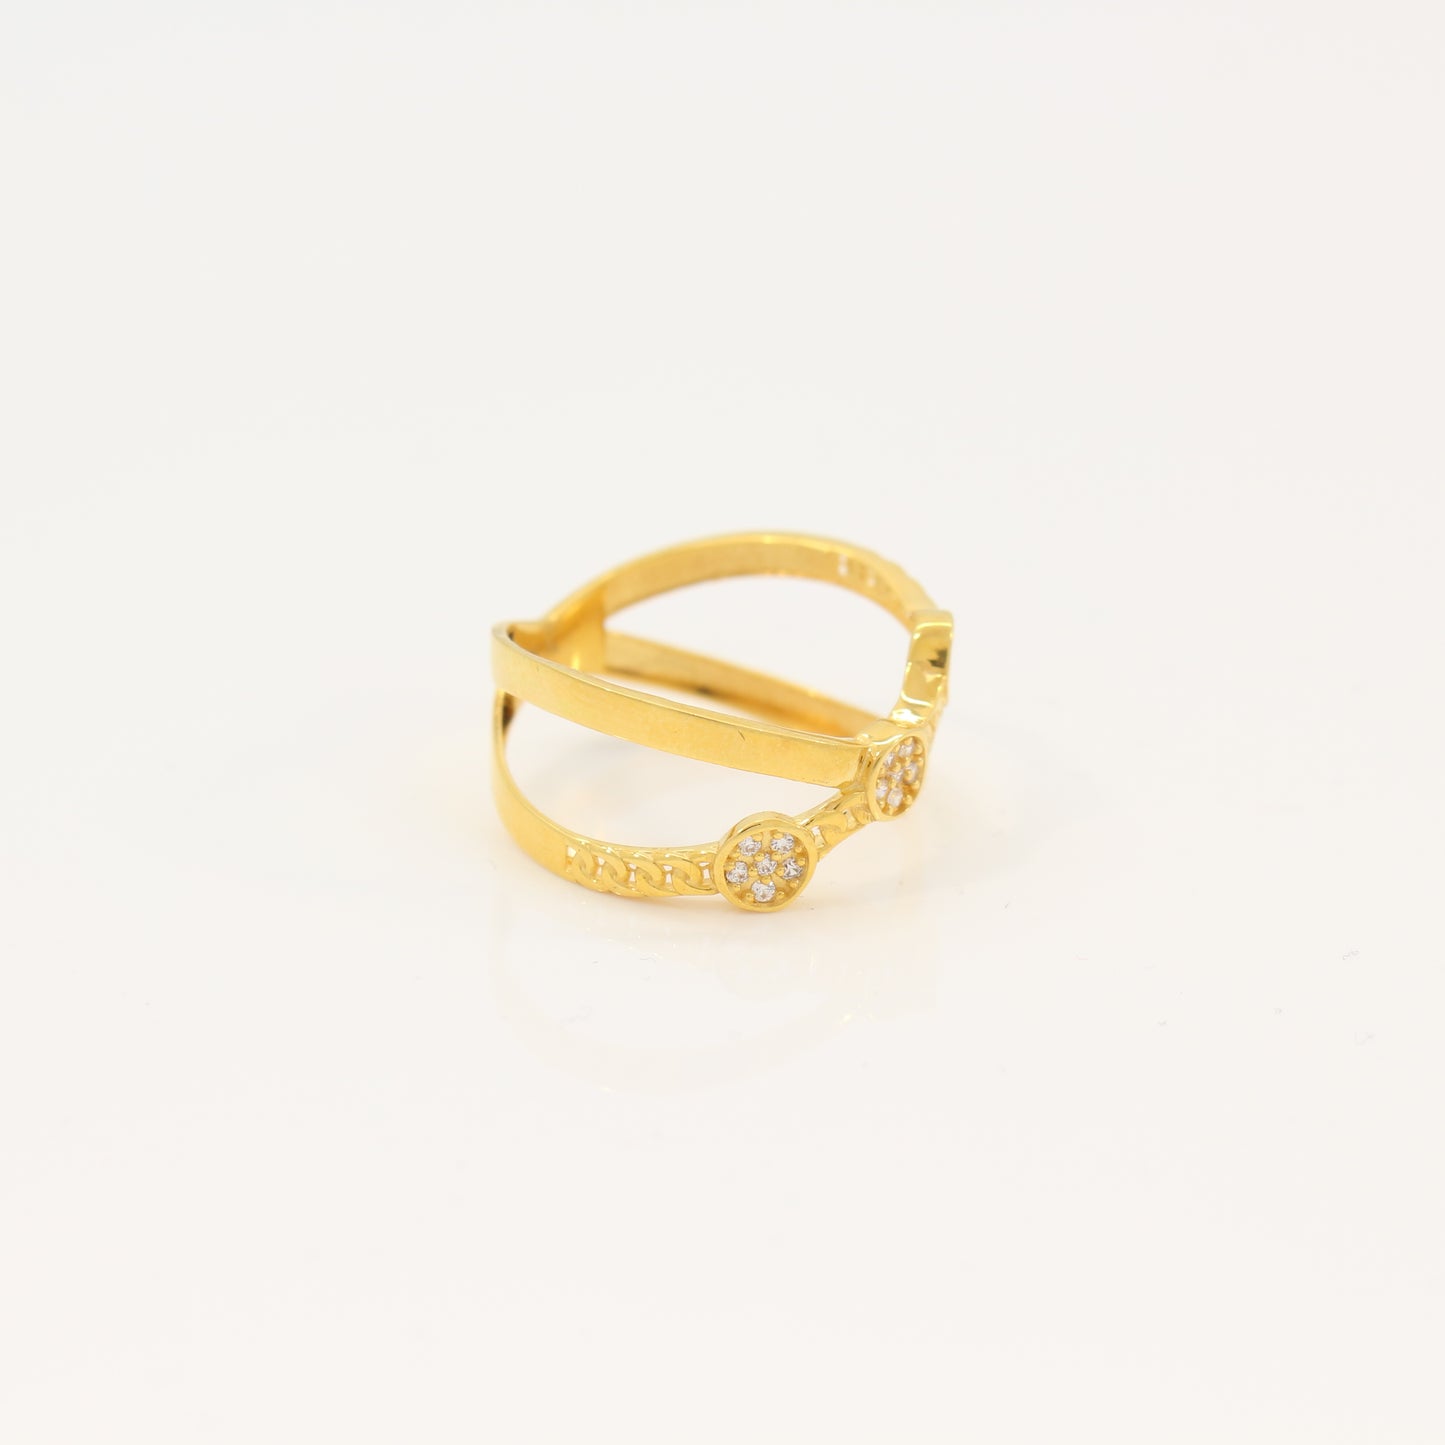 21K Gold Crisscross Ring (size 8.5)